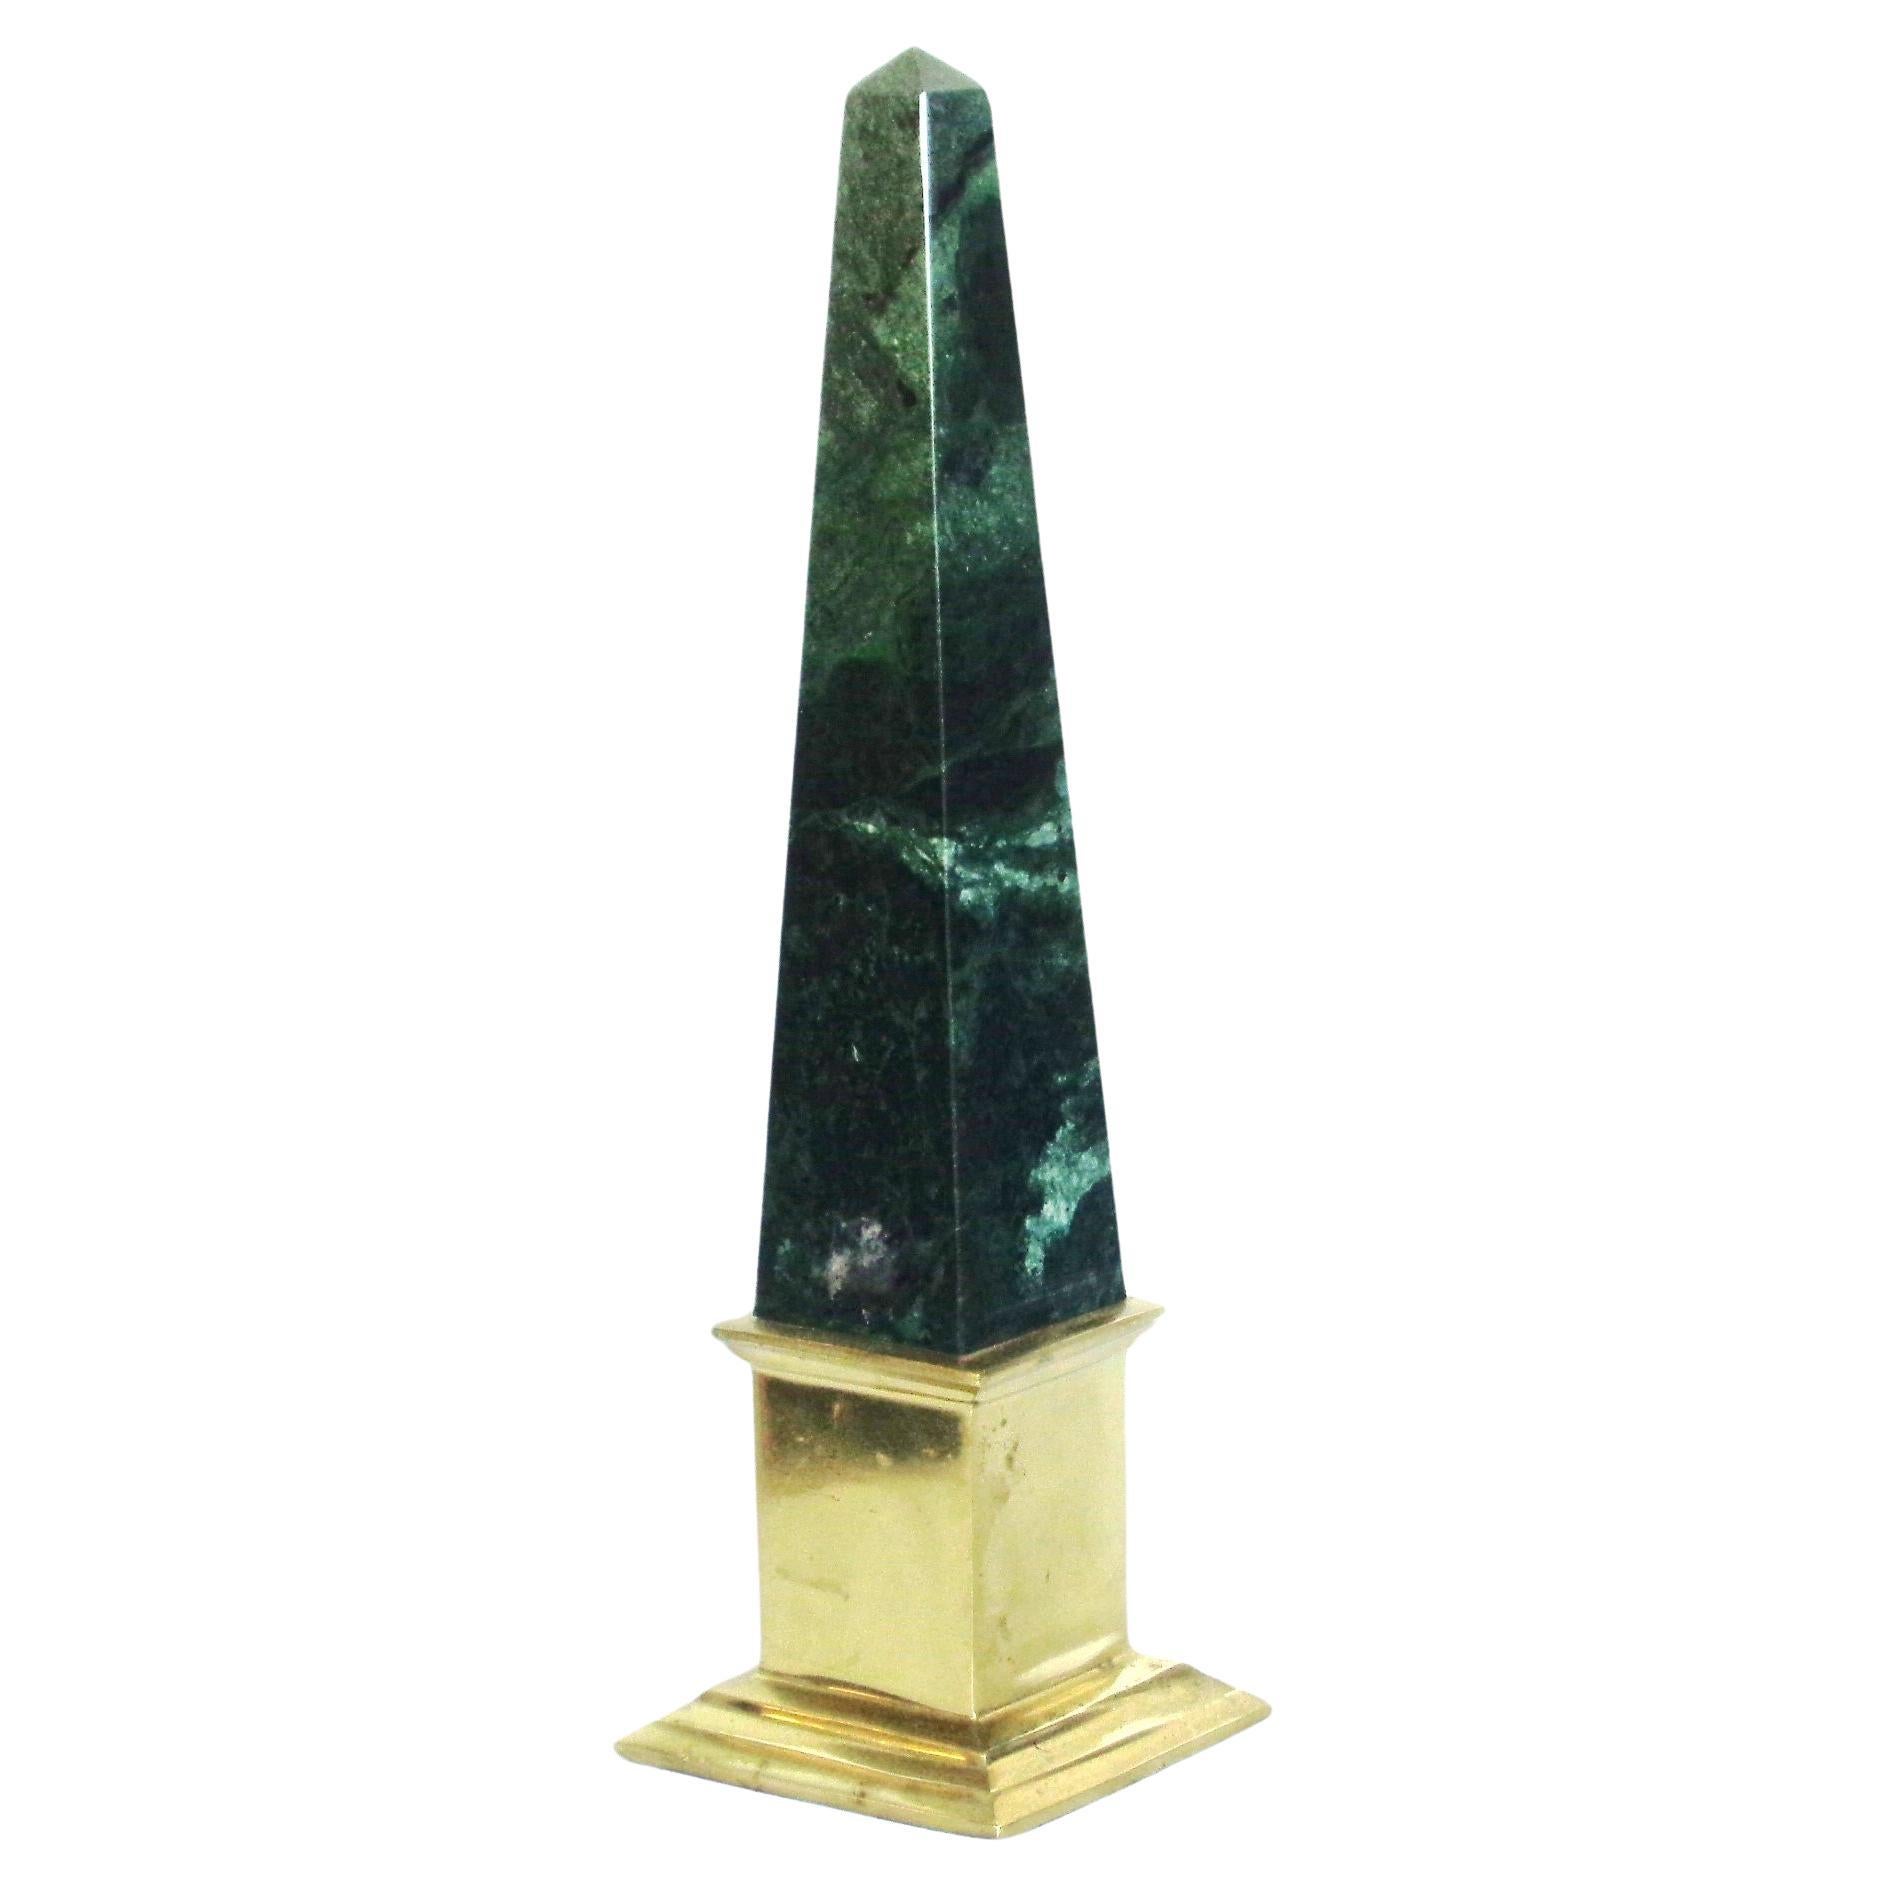 Neoklassizistischer Obelisk aus Verde Antigua-Marmor und Messing im neoklassischen Stil, um 1980